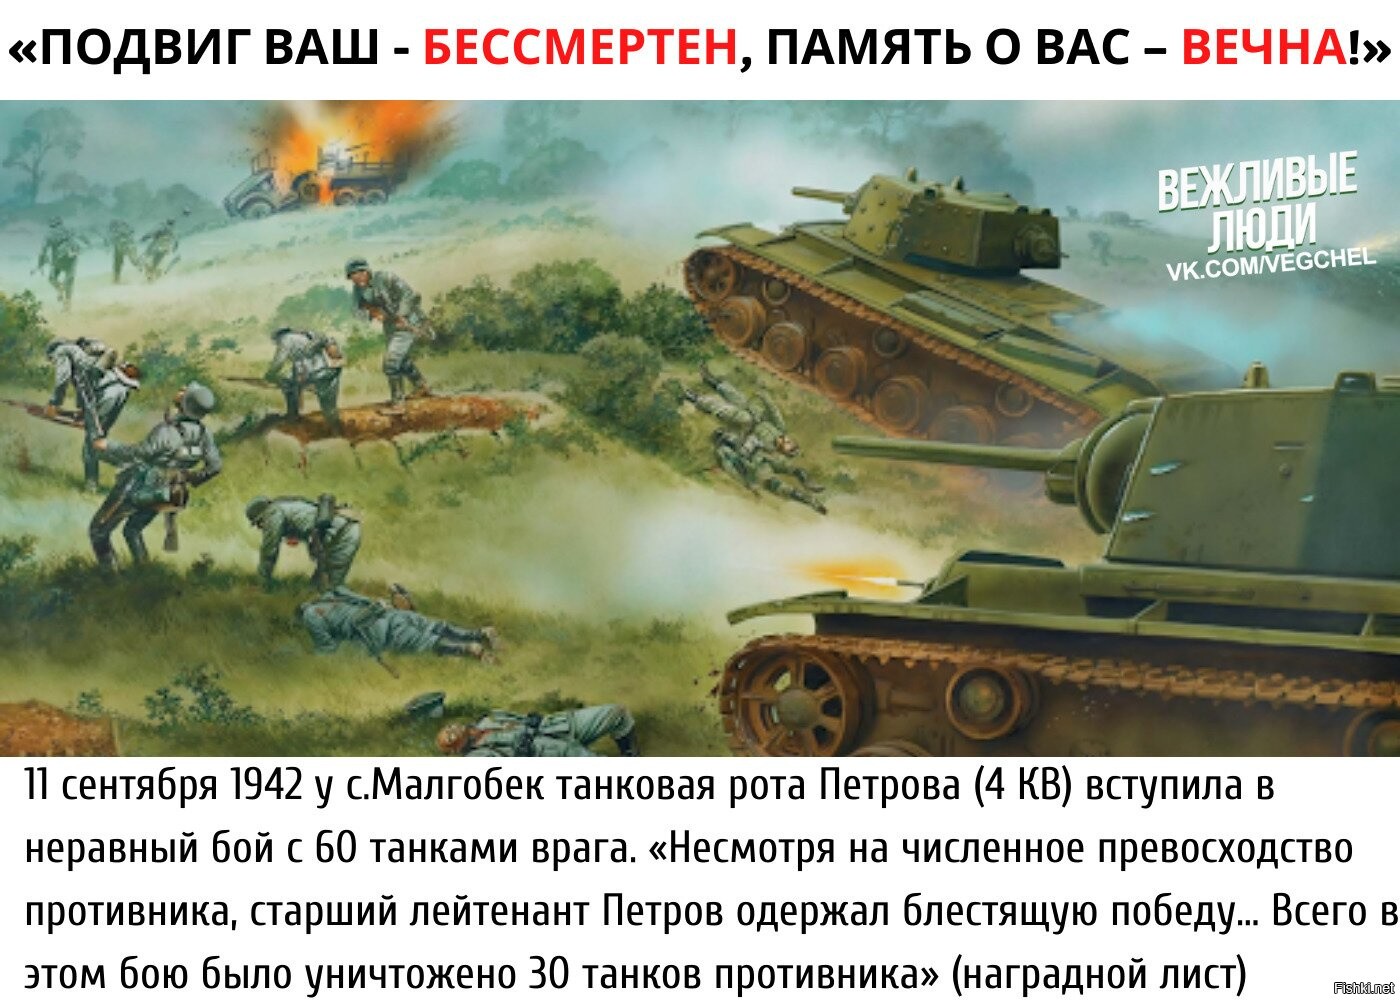 Сайт подвигов войны. 15 Подвигов Великой Отечественной войны.